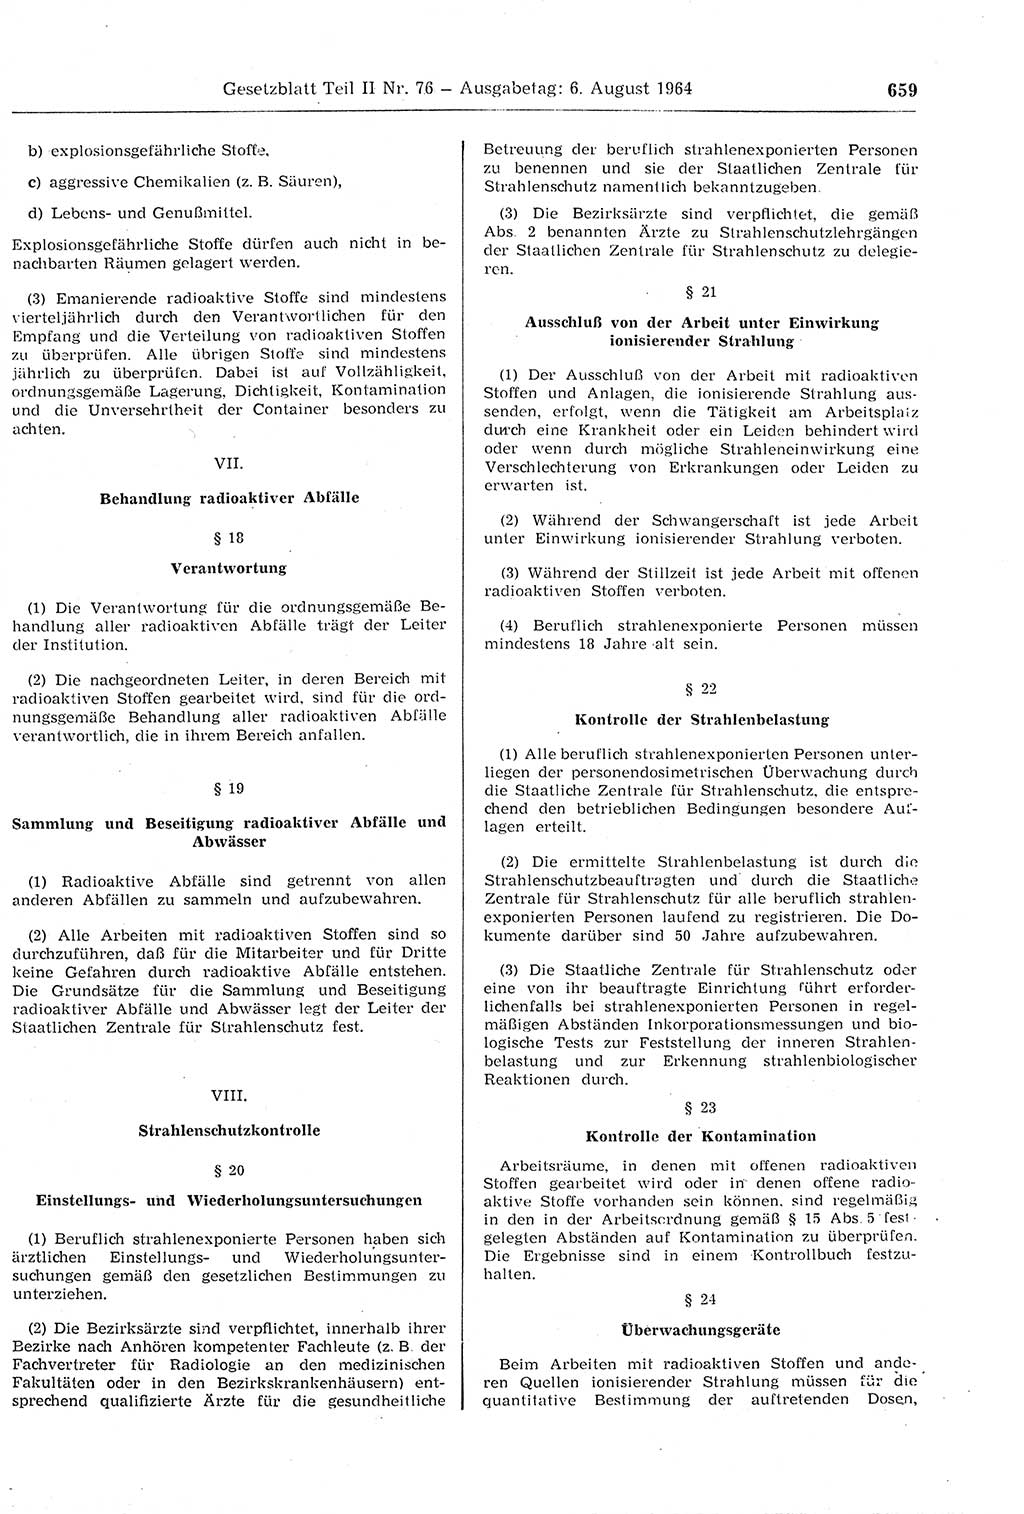 Gesetzblatt (GBl.) der Deutschen Demokratischen Republik (DDR) Teil ⅠⅠ 1964, Seite 659 (GBl. DDR ⅠⅠ 1964, S. 659)